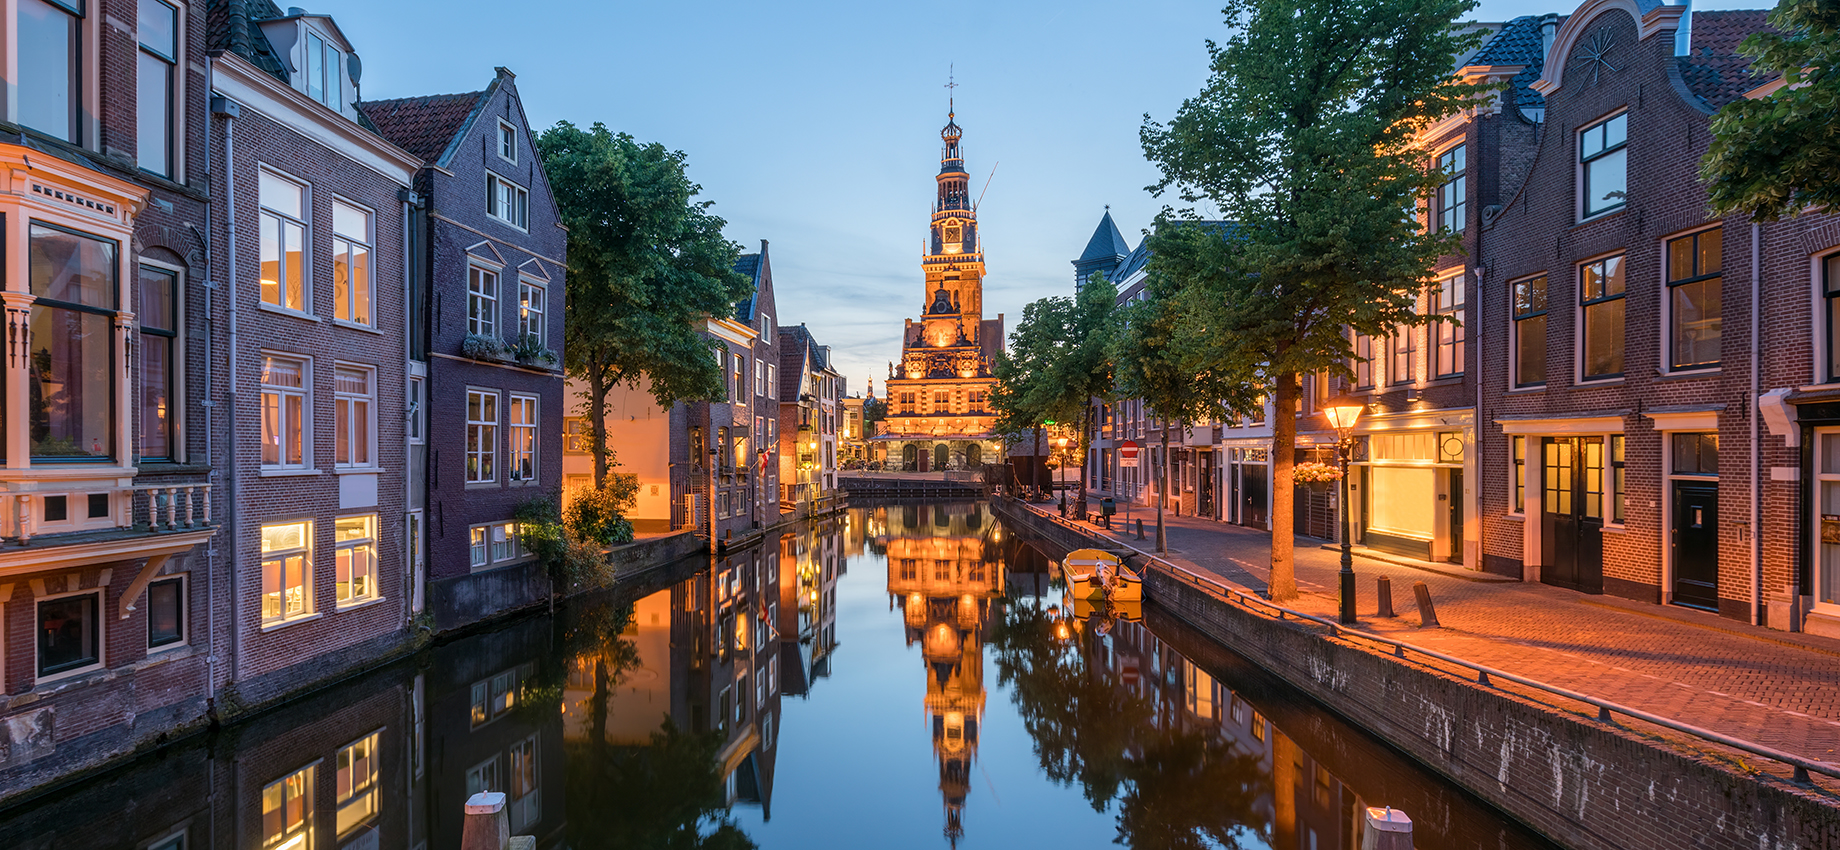 Нидерланды отменили коронавирусные ограничения для туристов